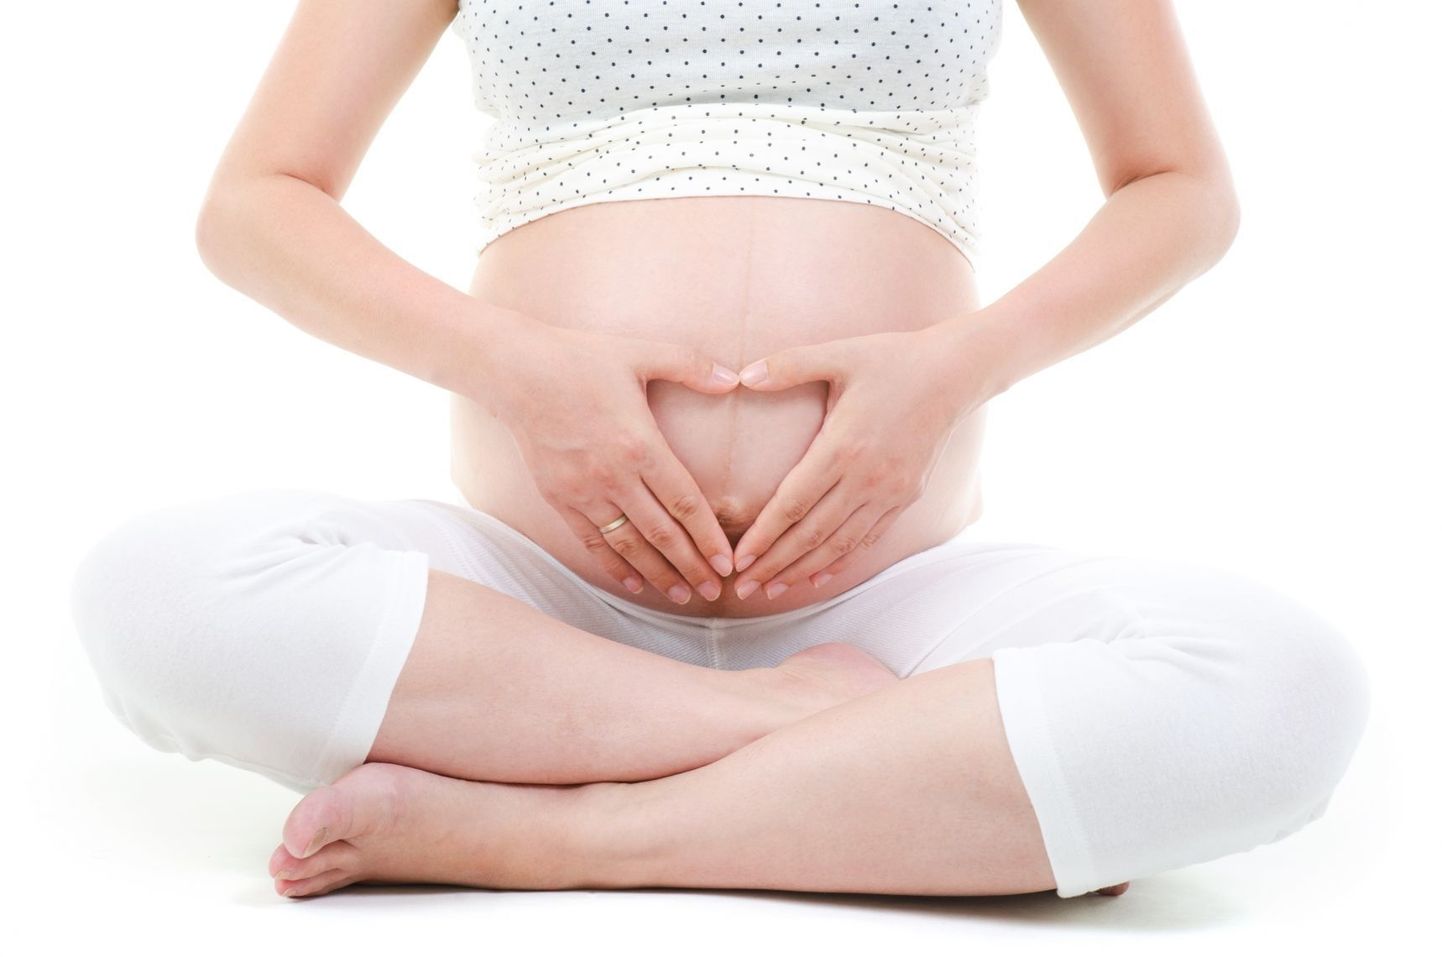 Naine sünnitas terve lapse, kes arenes kõhuõõnes, mitte emakas